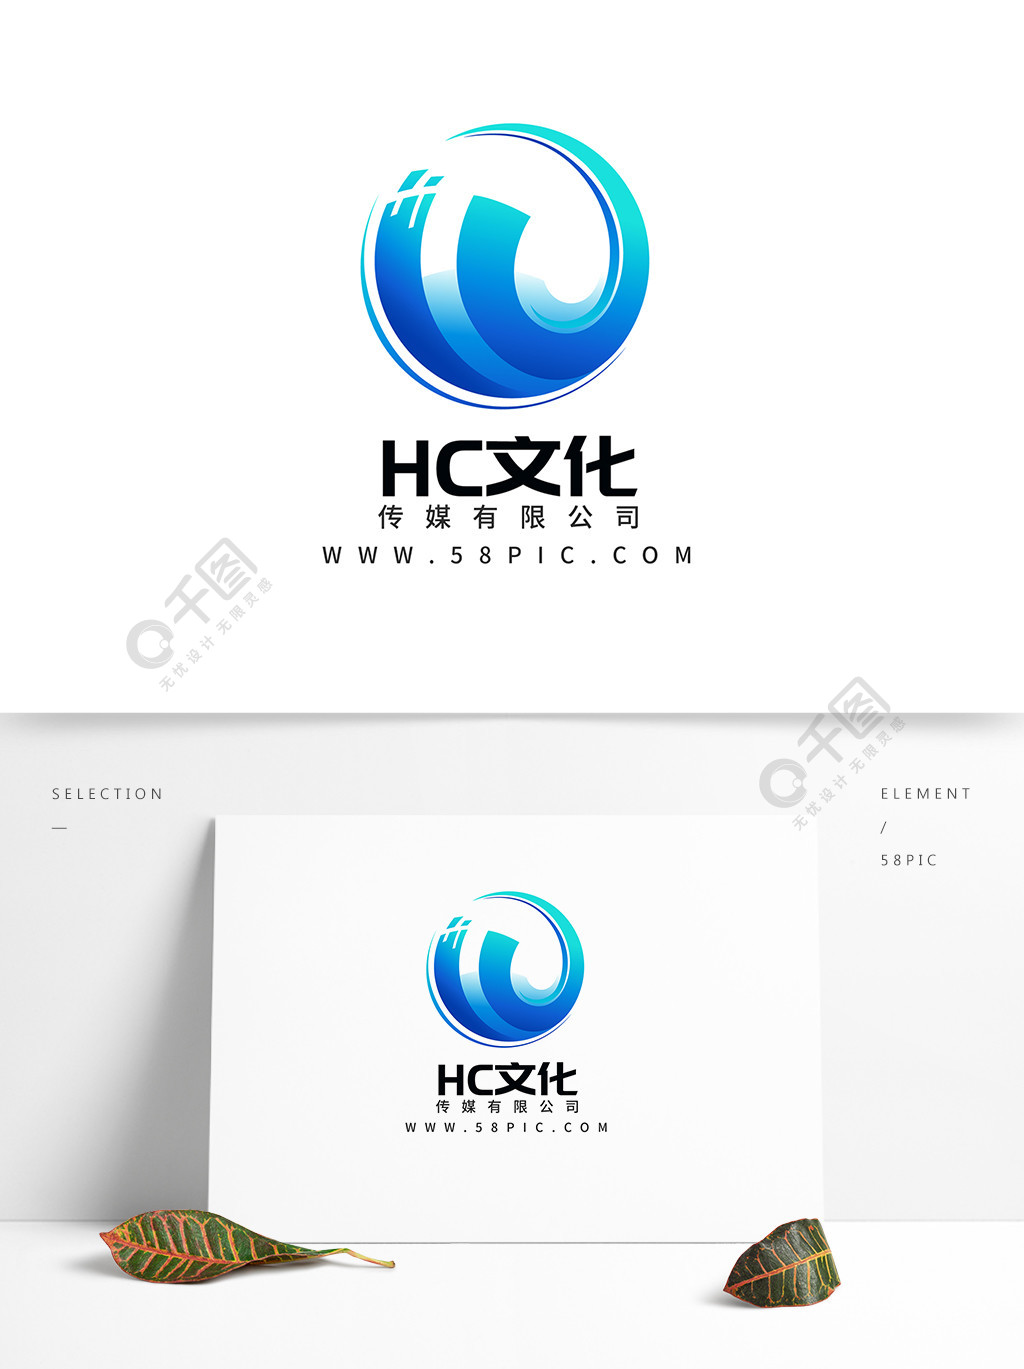 hc科技文化传媒公司企业logo标志1年前发布